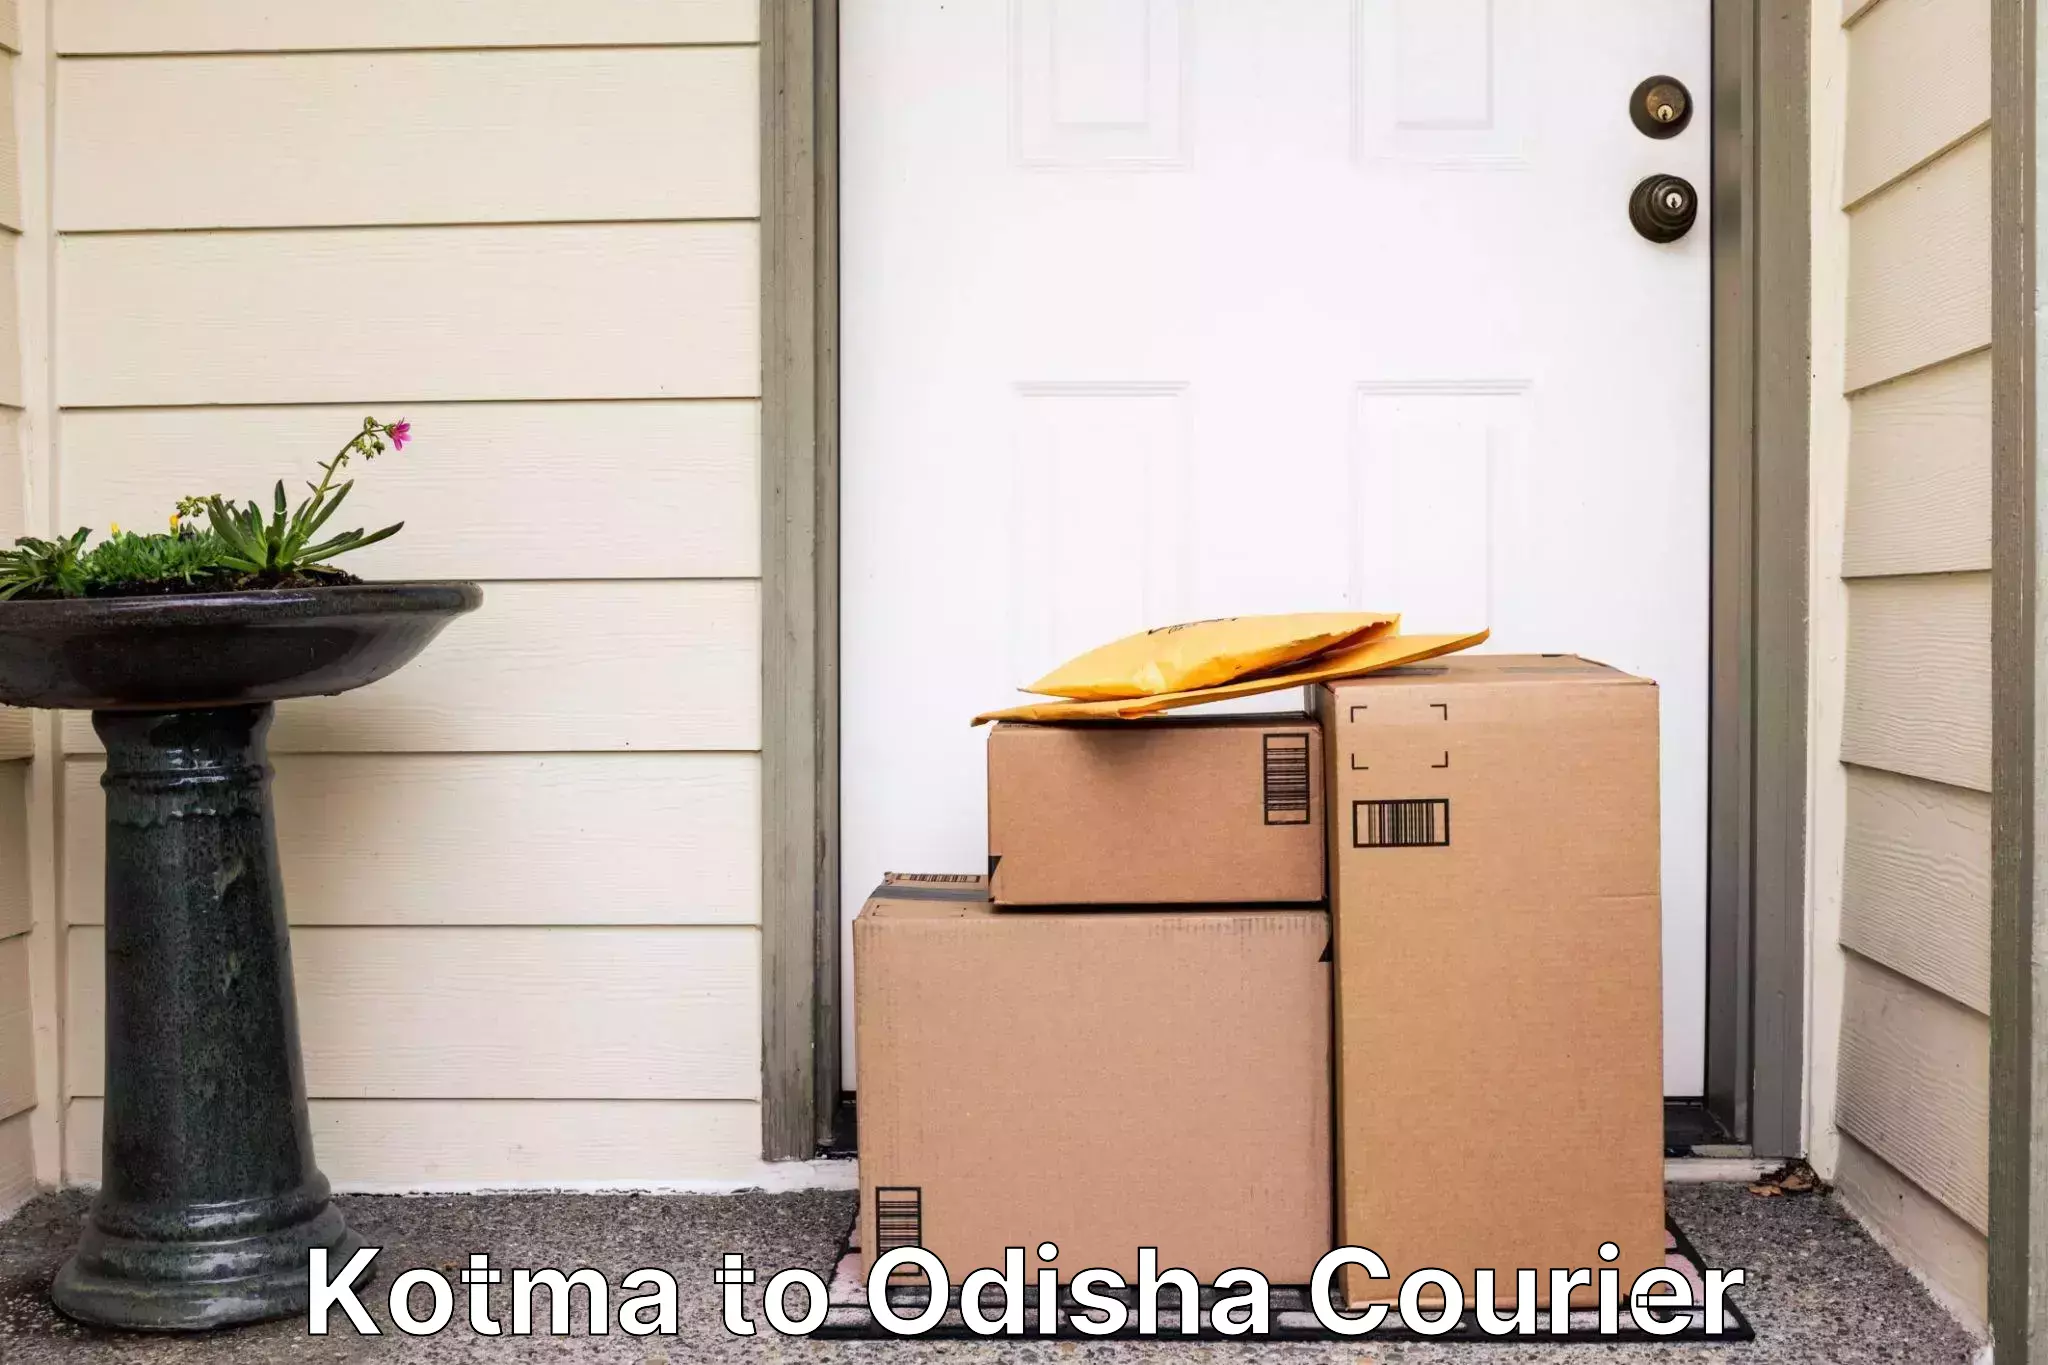 Logistics service provider Kotma to Odisha